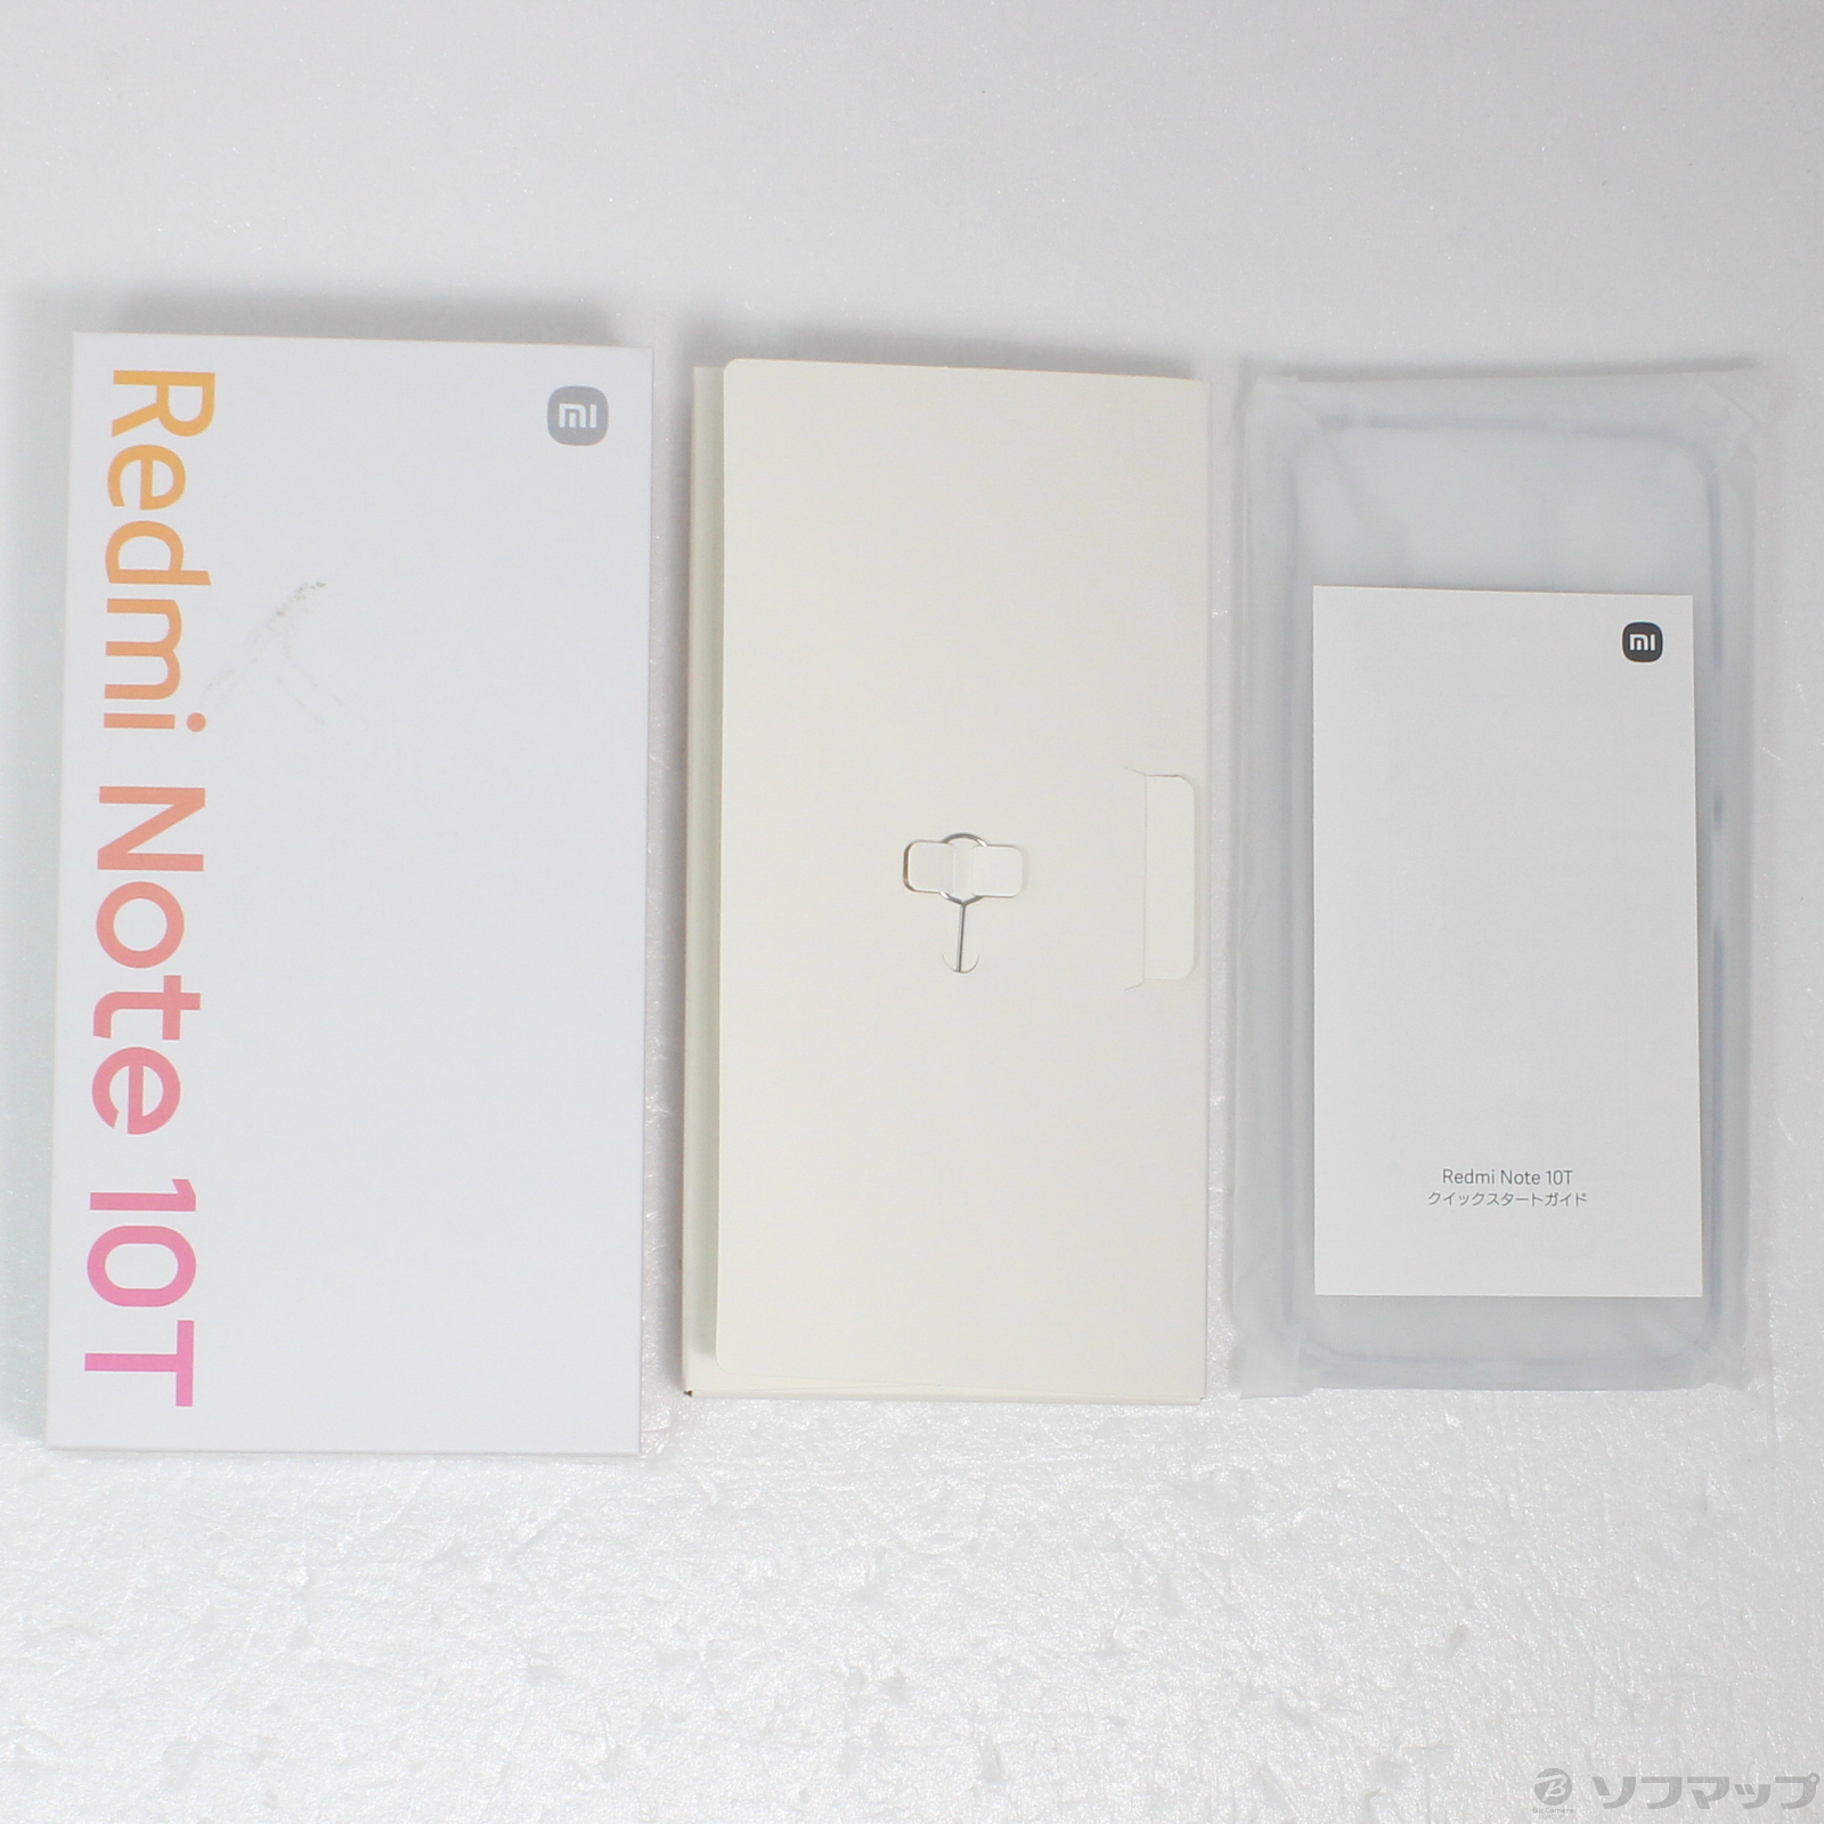 中古】Redmi Note 10T 64GB ナイトタイムブルー 22021119KR SIMフリー 